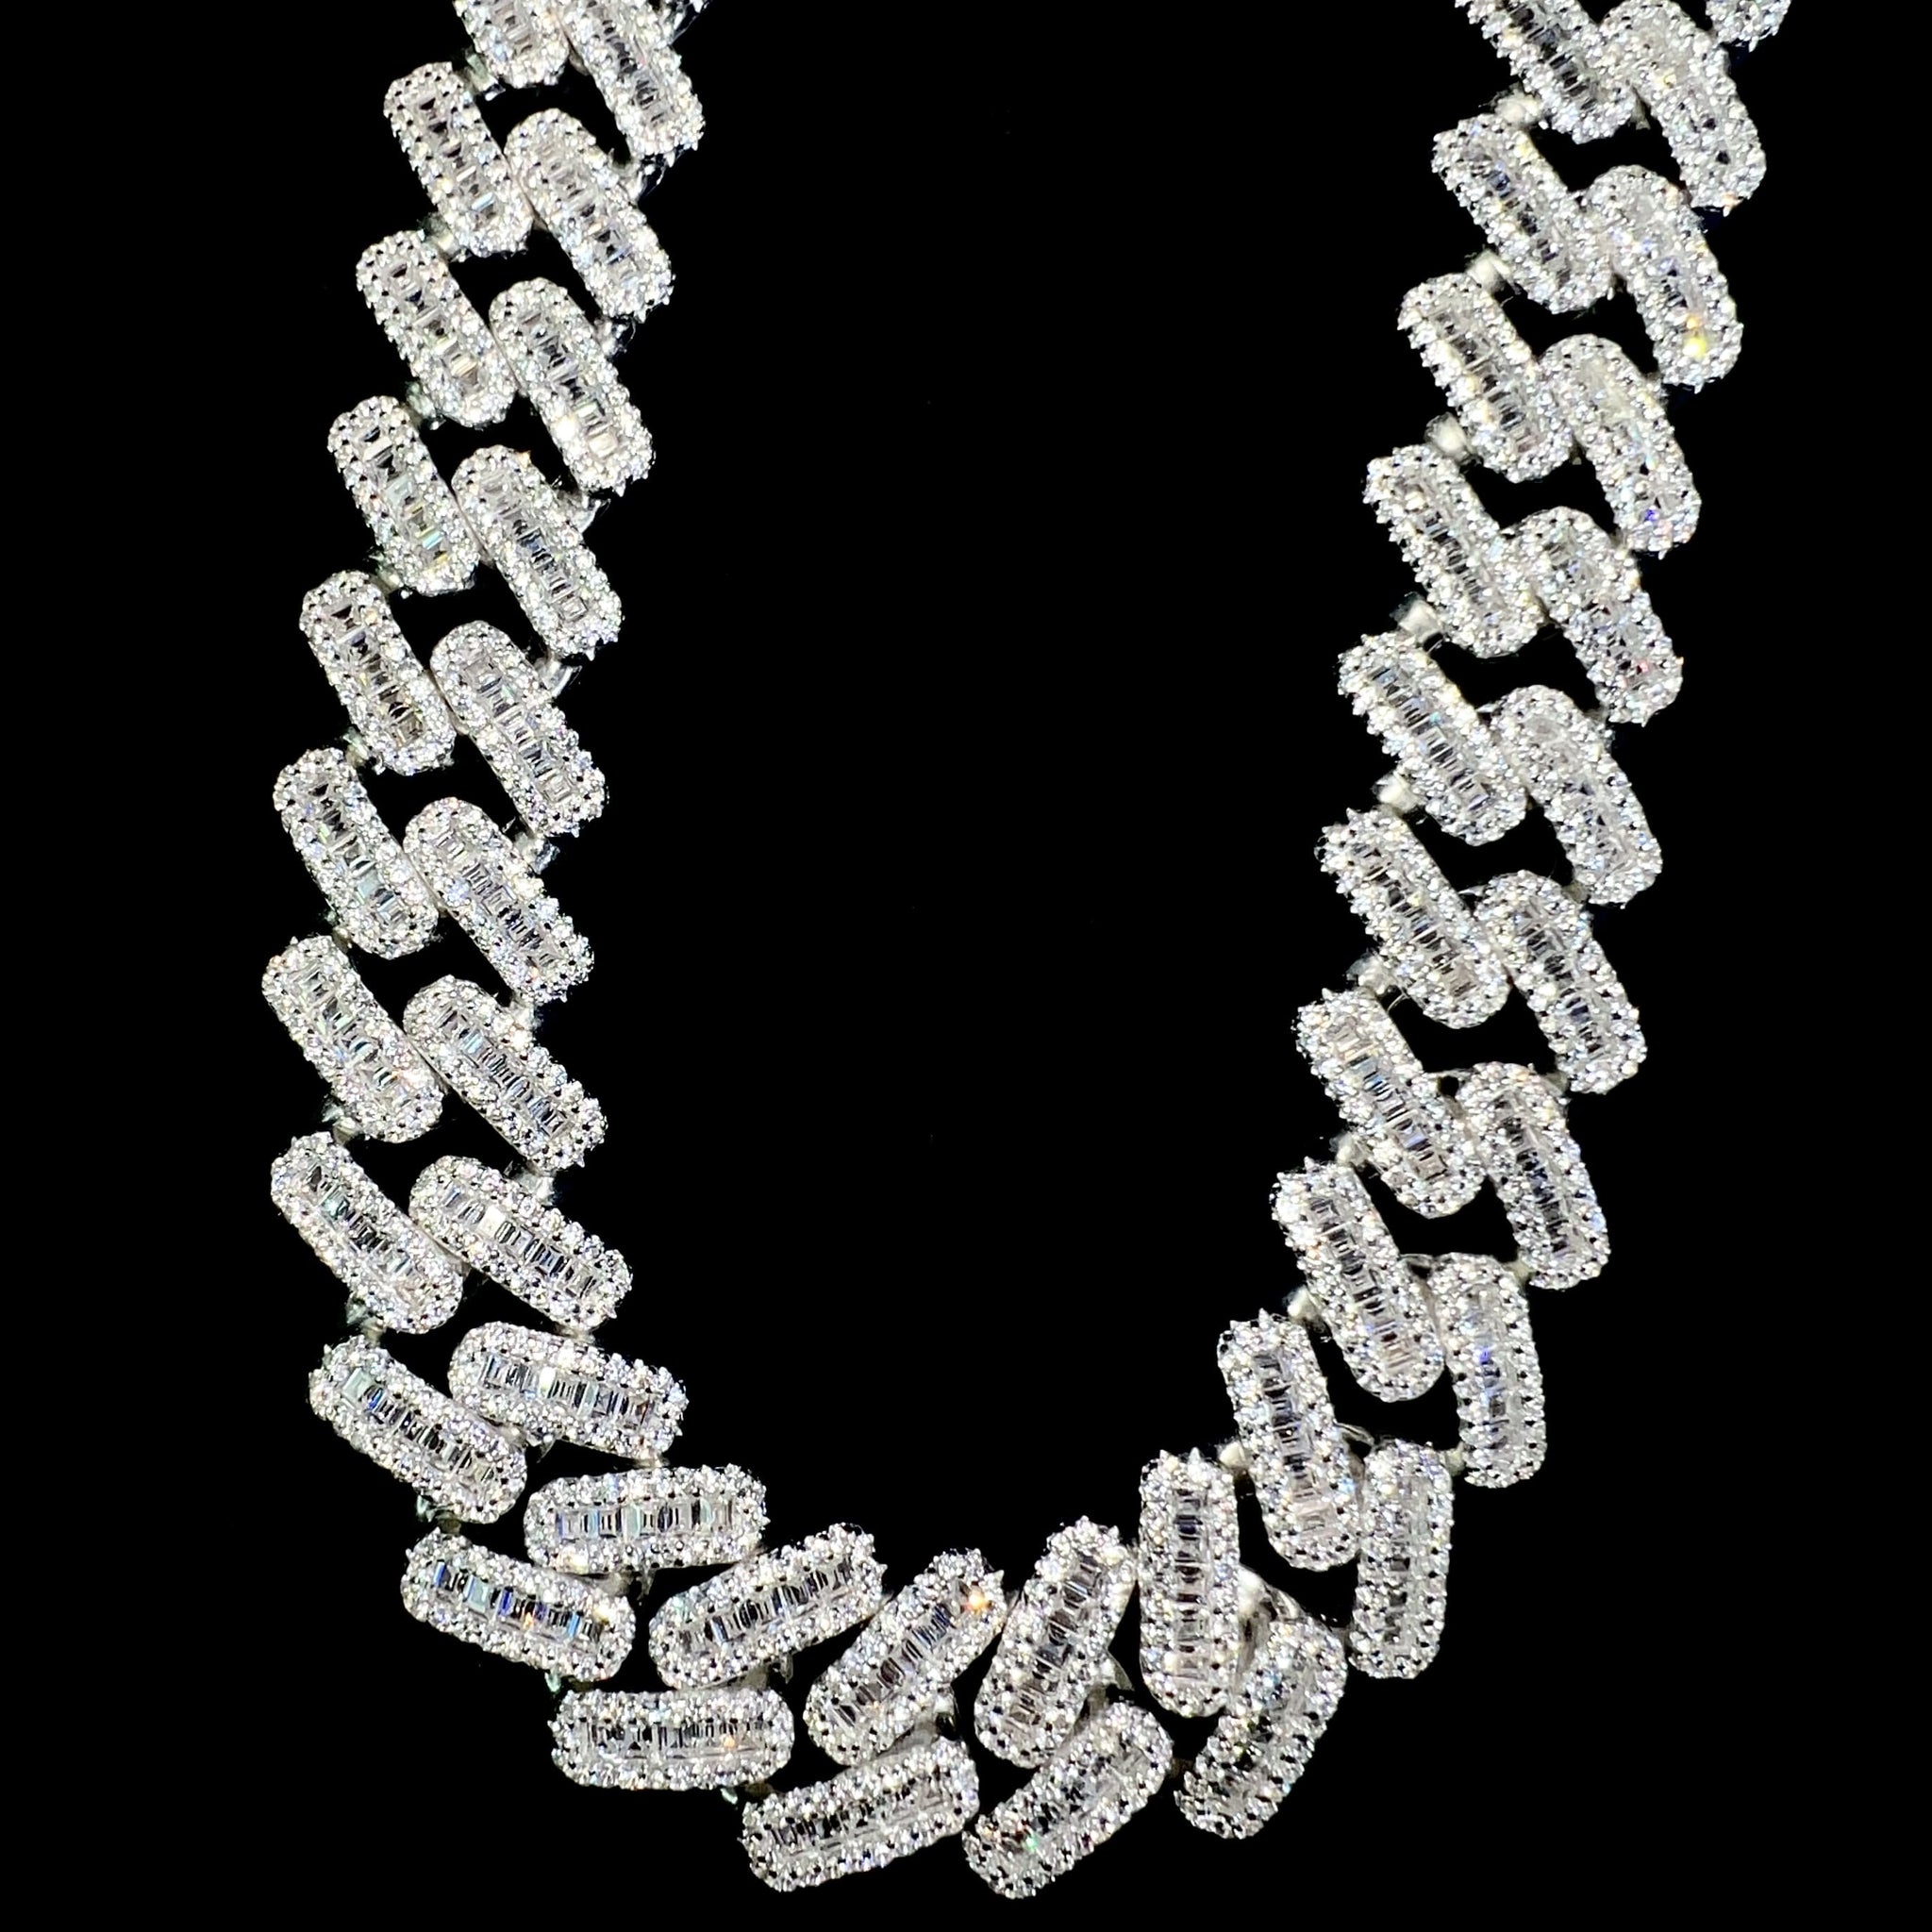 Baguette Cuban Prong Link Chain - 60cm / 15mm - Silver 925 - Sehgal Dubai Collection